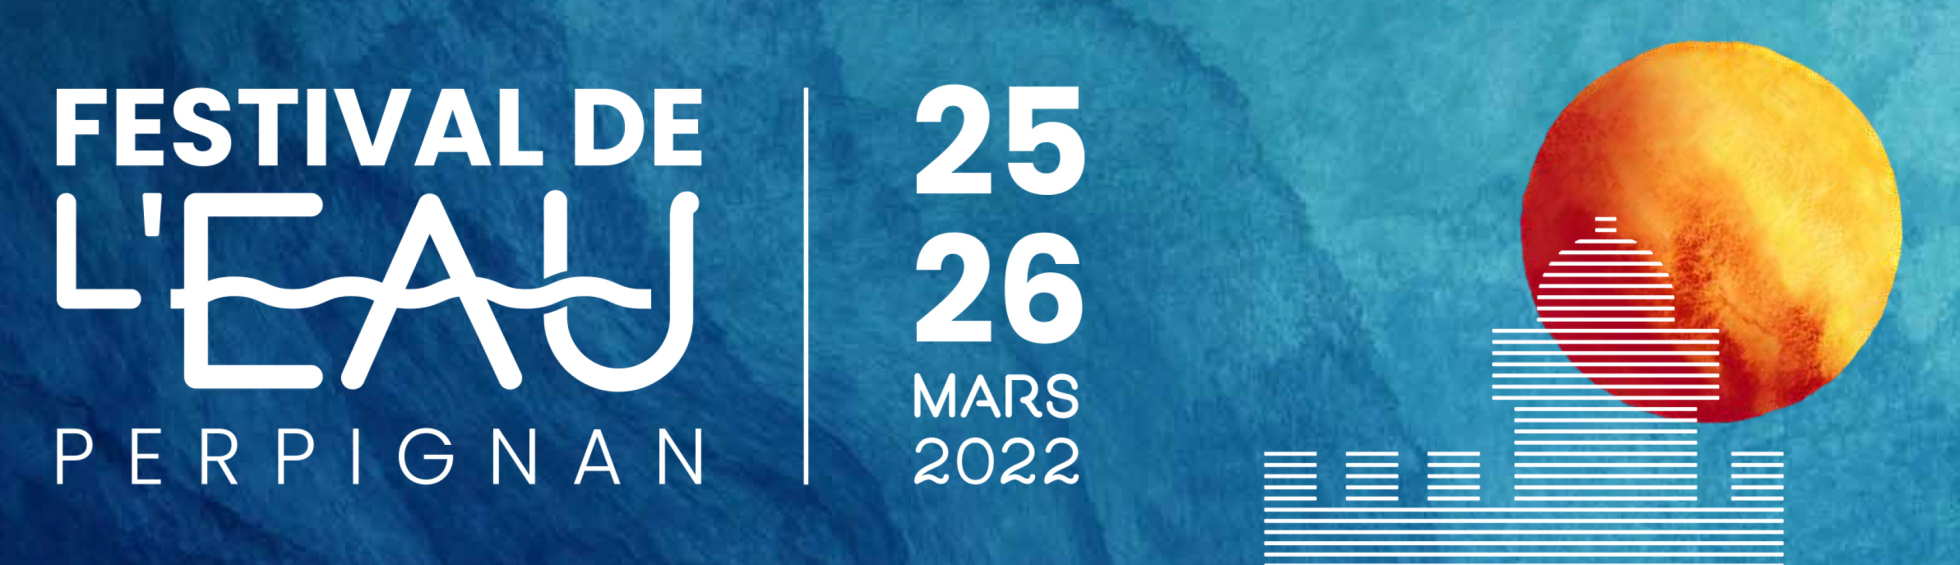 Festival de l'eau à Perpignan - 25 & 26 mars 2022